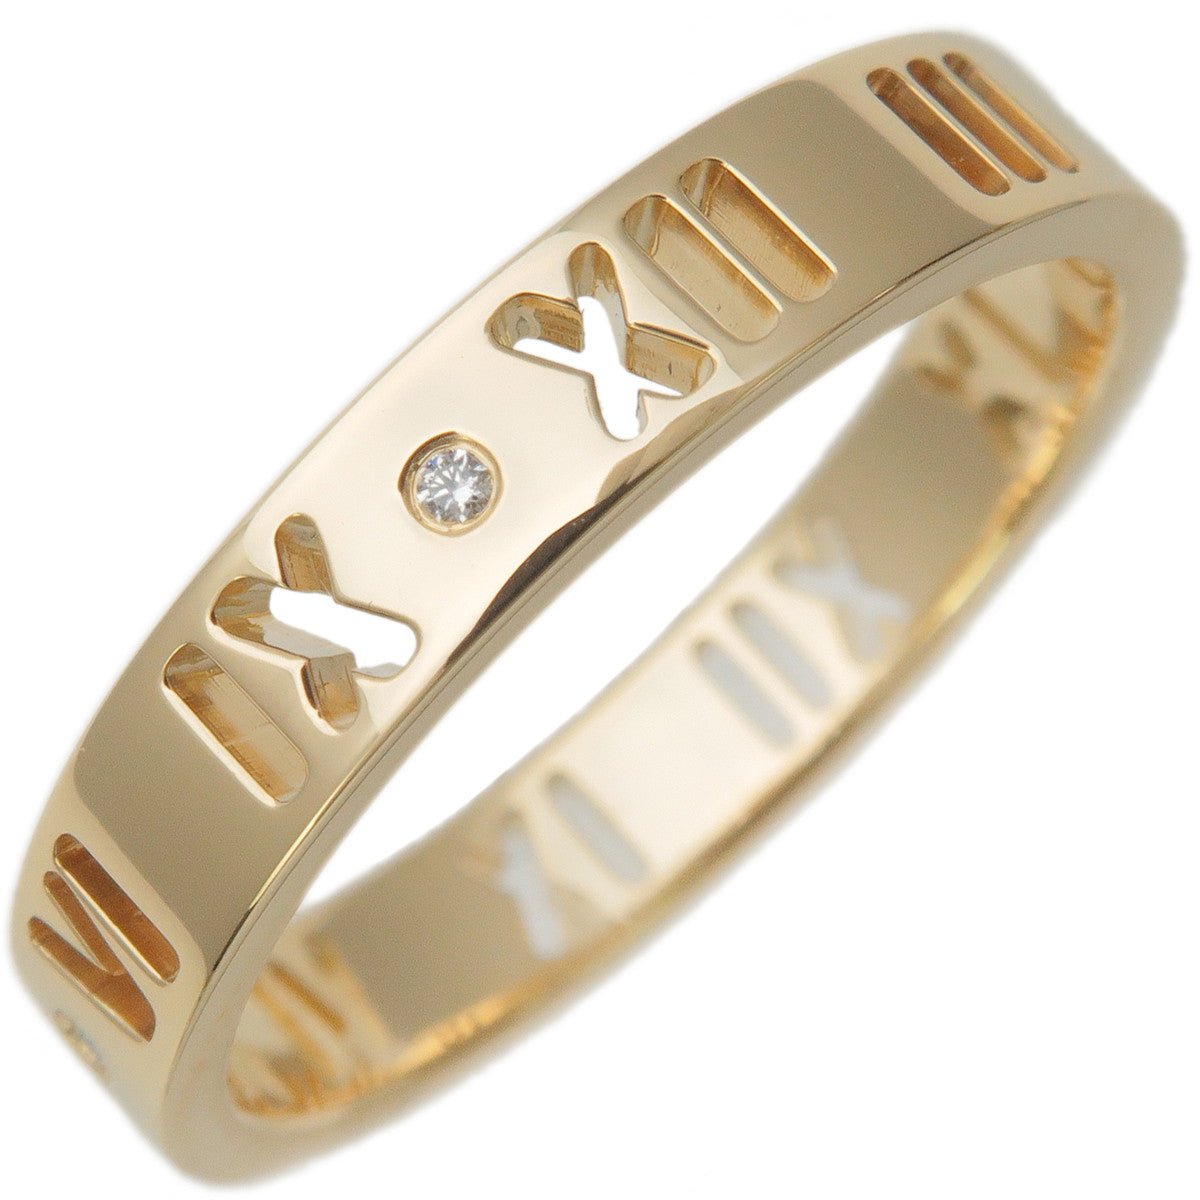 Tiffany&Co.-Pierced-Atlas-4P-Diamond-Ring-K18-750YG-US6.5-EU53